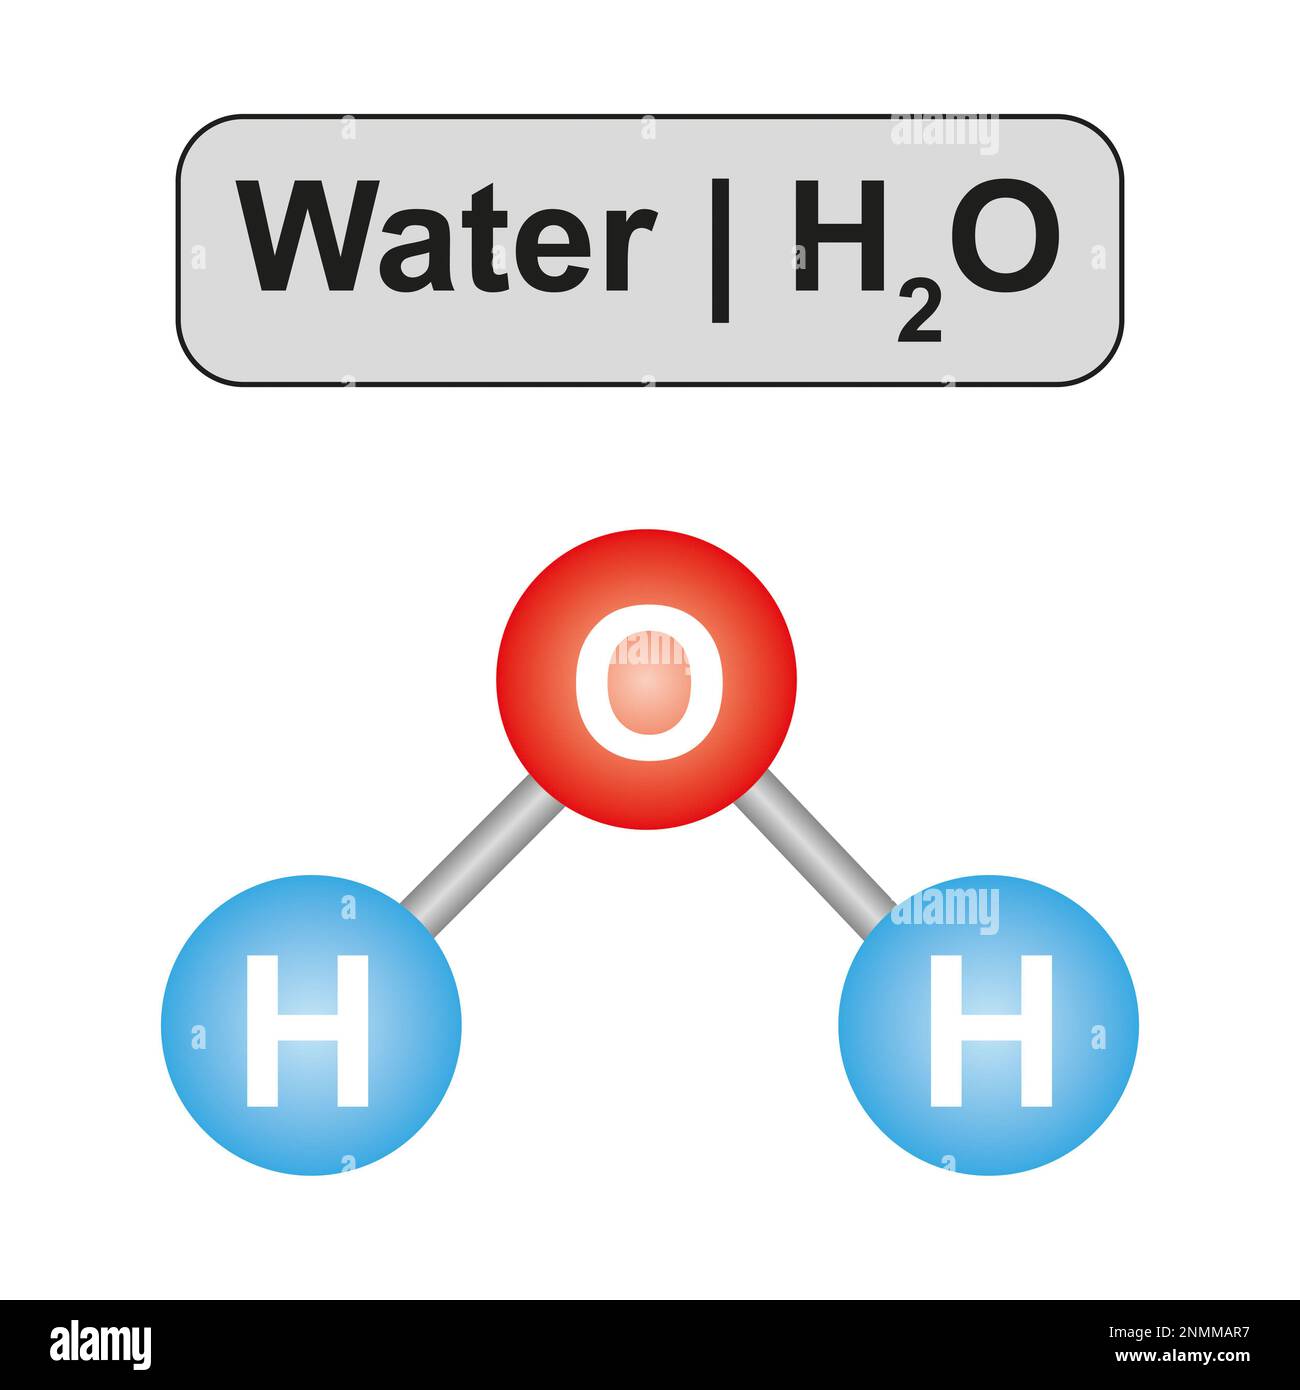 Water molecule, illustration Stock Photo